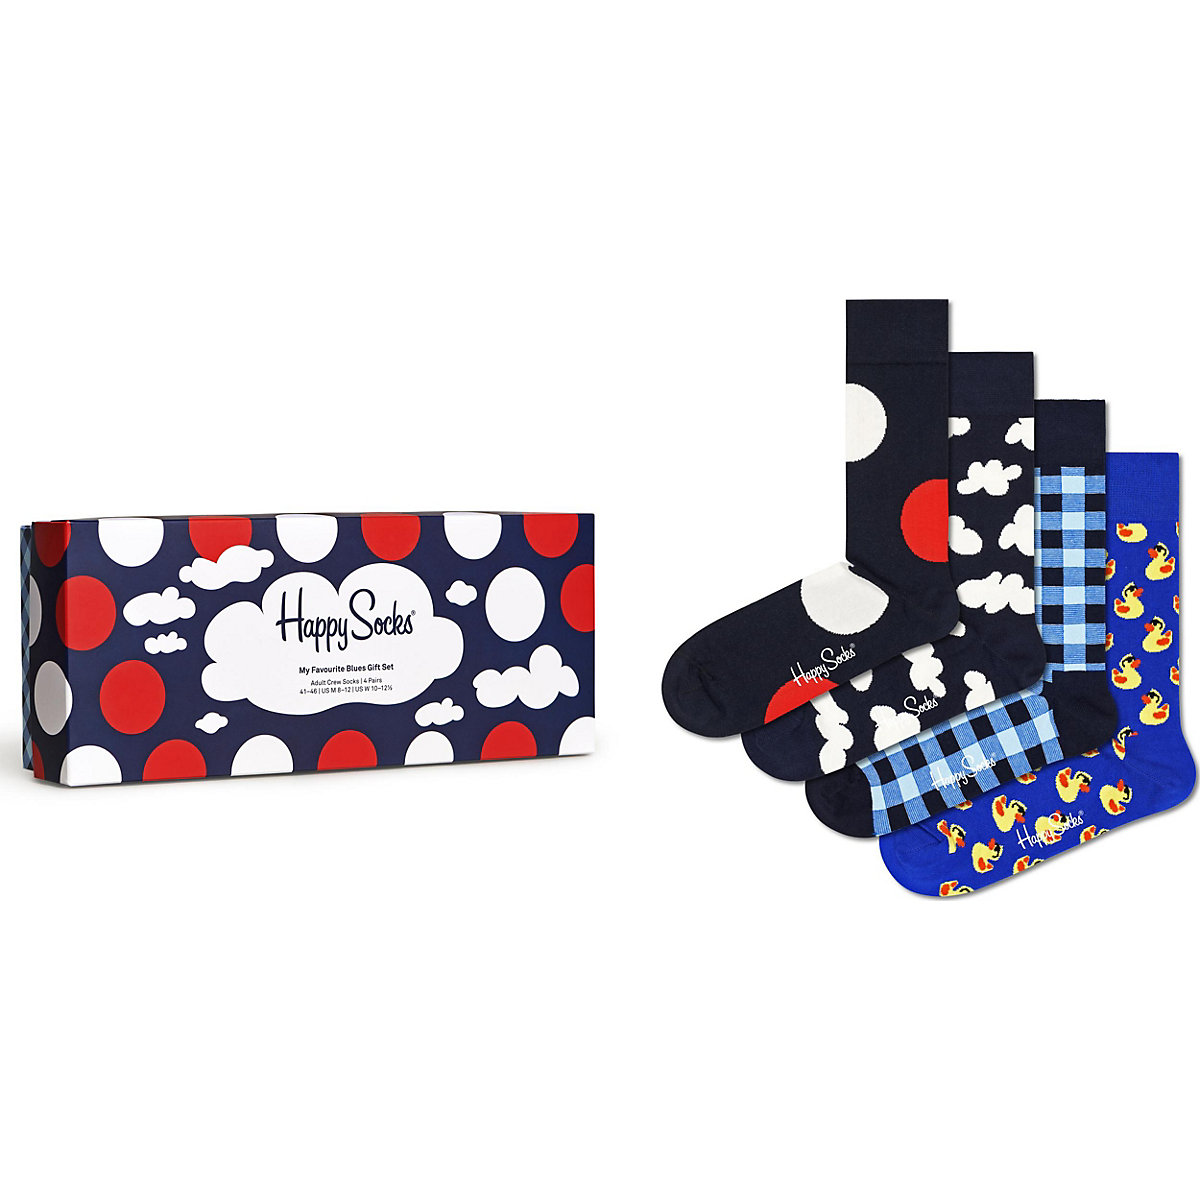 Happy Socks 4er Pack 4-pack My Favourite Blues Socks Gift Set Socken mehrfarbig